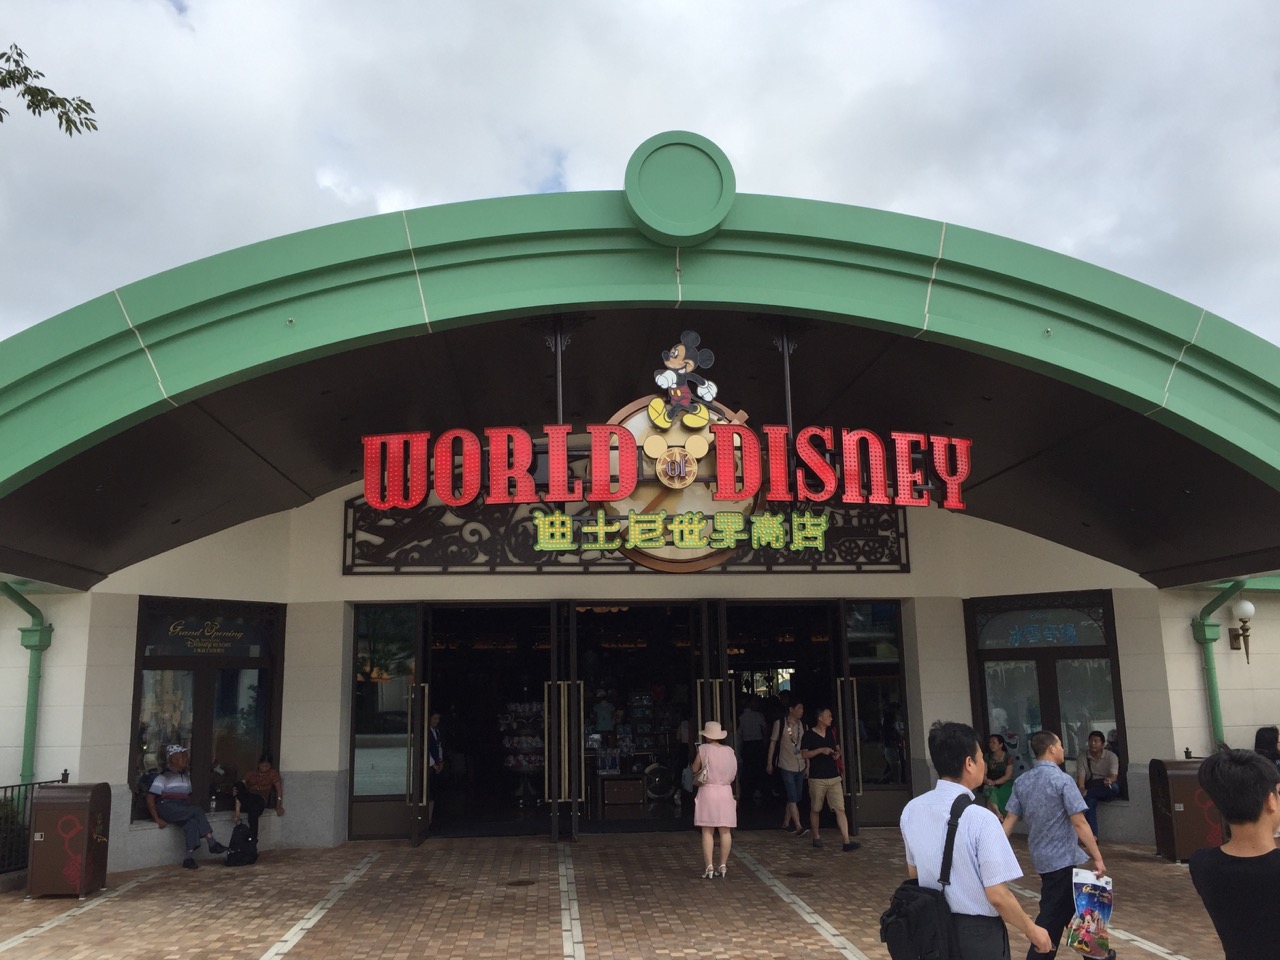 World of Disney Entrance. Photo by J. Jeff Kober.